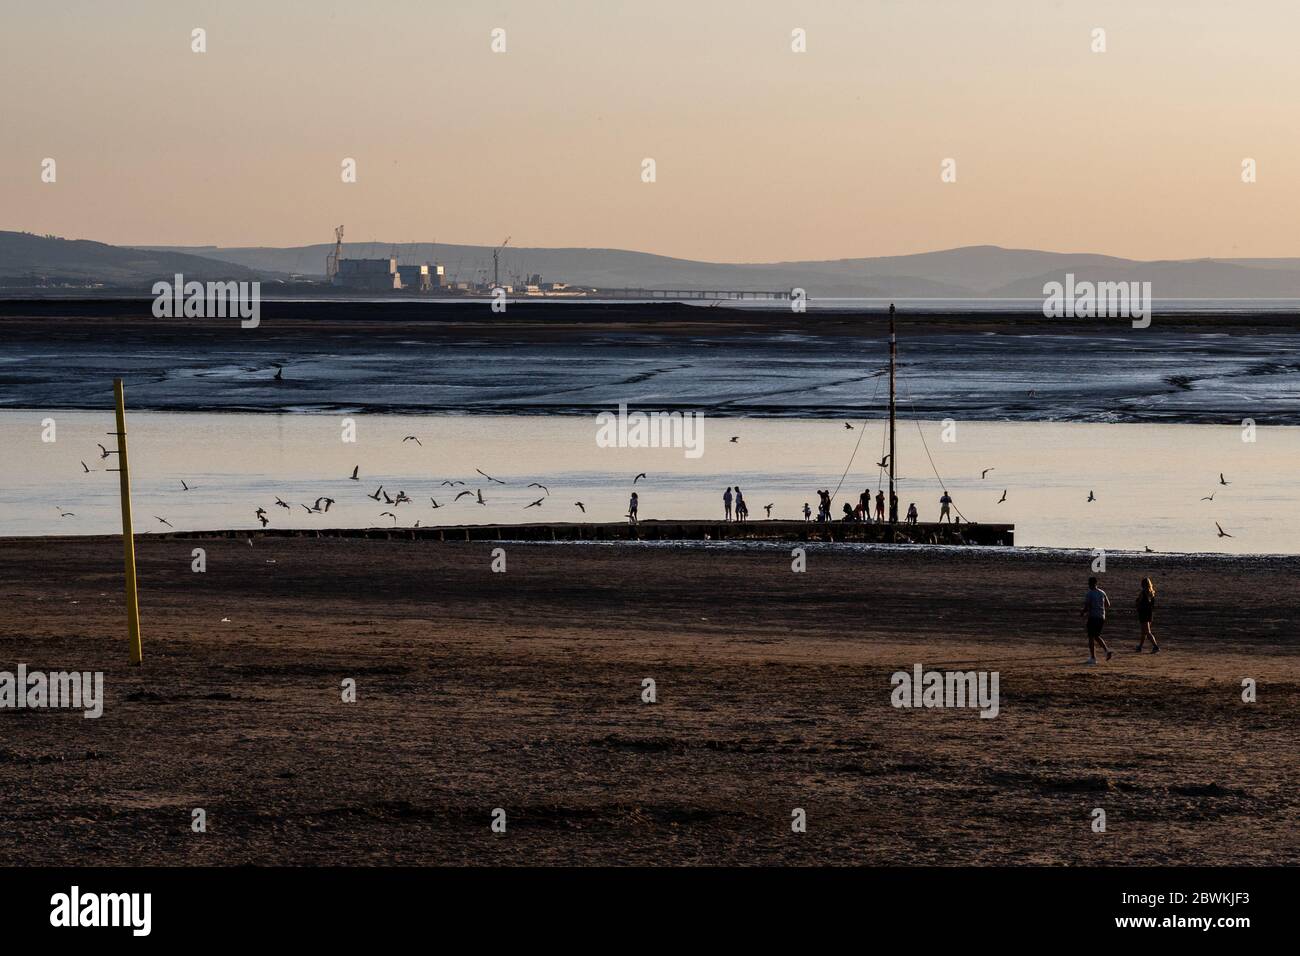 Burnham-on-Sea, Angleterre, Royaume-Uni - 31 mai 2020 : les gens pêchent, marchent, font du jogging et jouent sur la plage et les méplats de boue à l'embouchure de la rivière Parrett à Burnham-on Banque D'Images